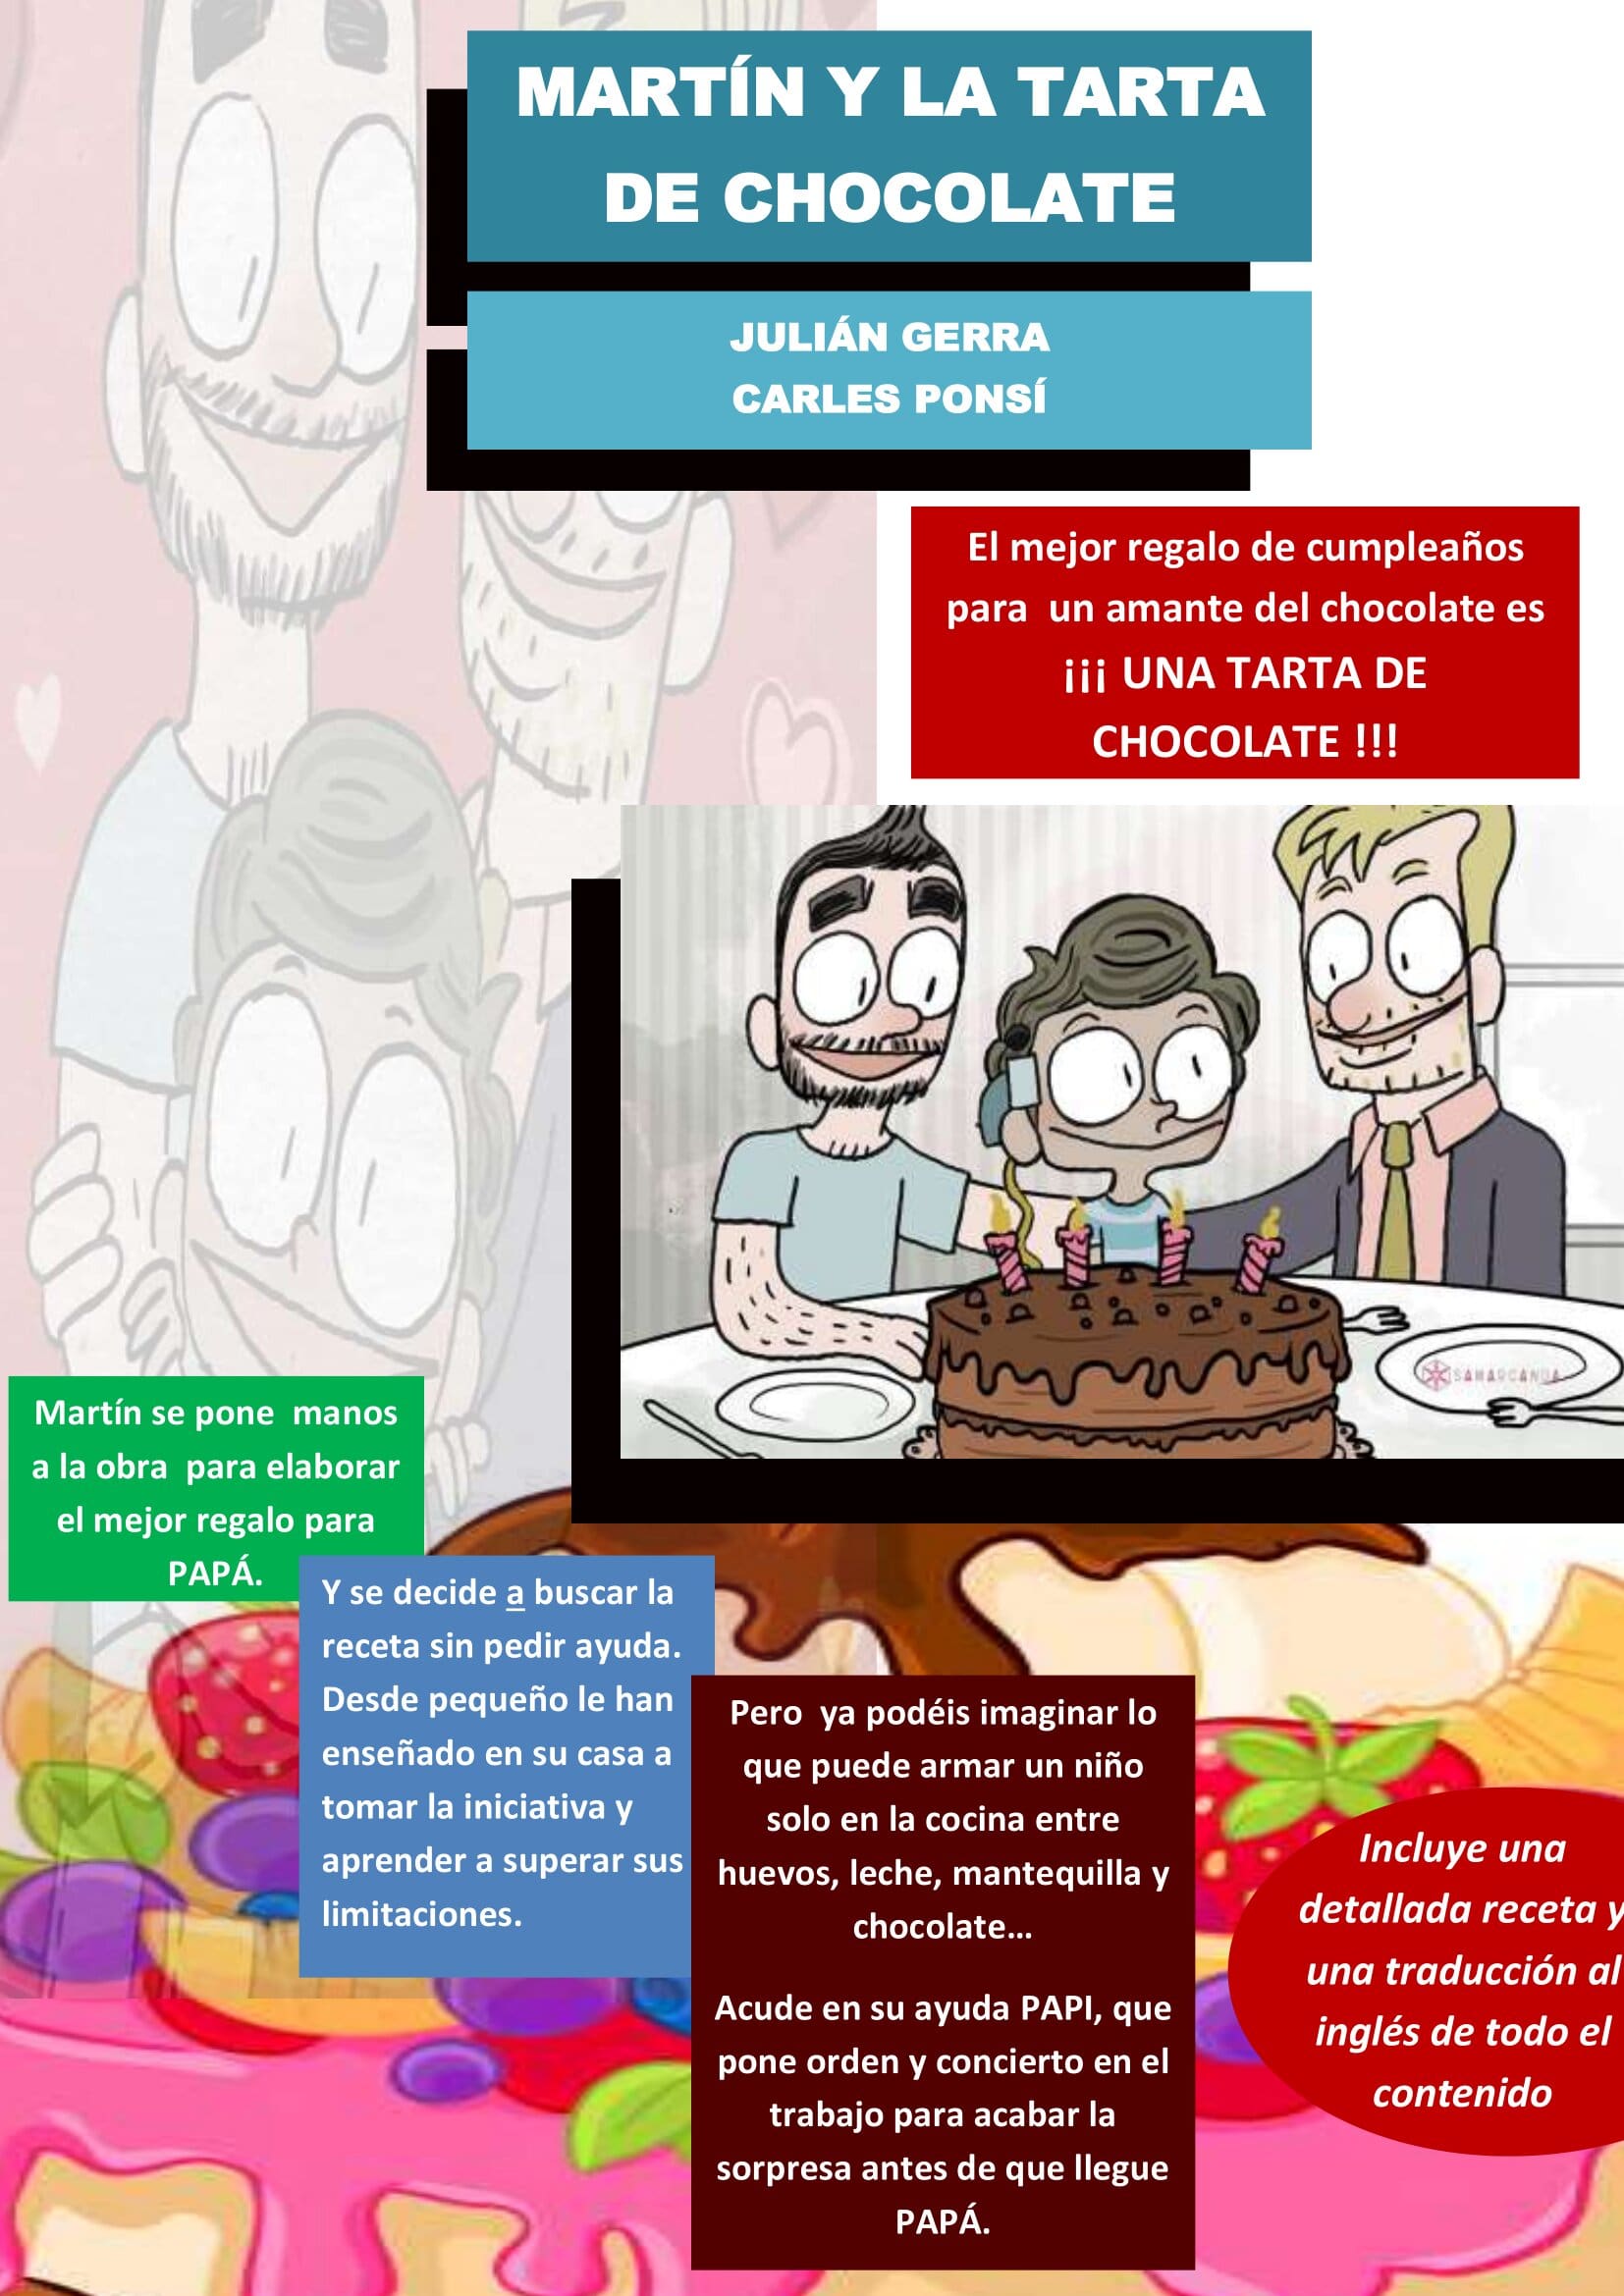 4. Martín y la tarta de chocolate